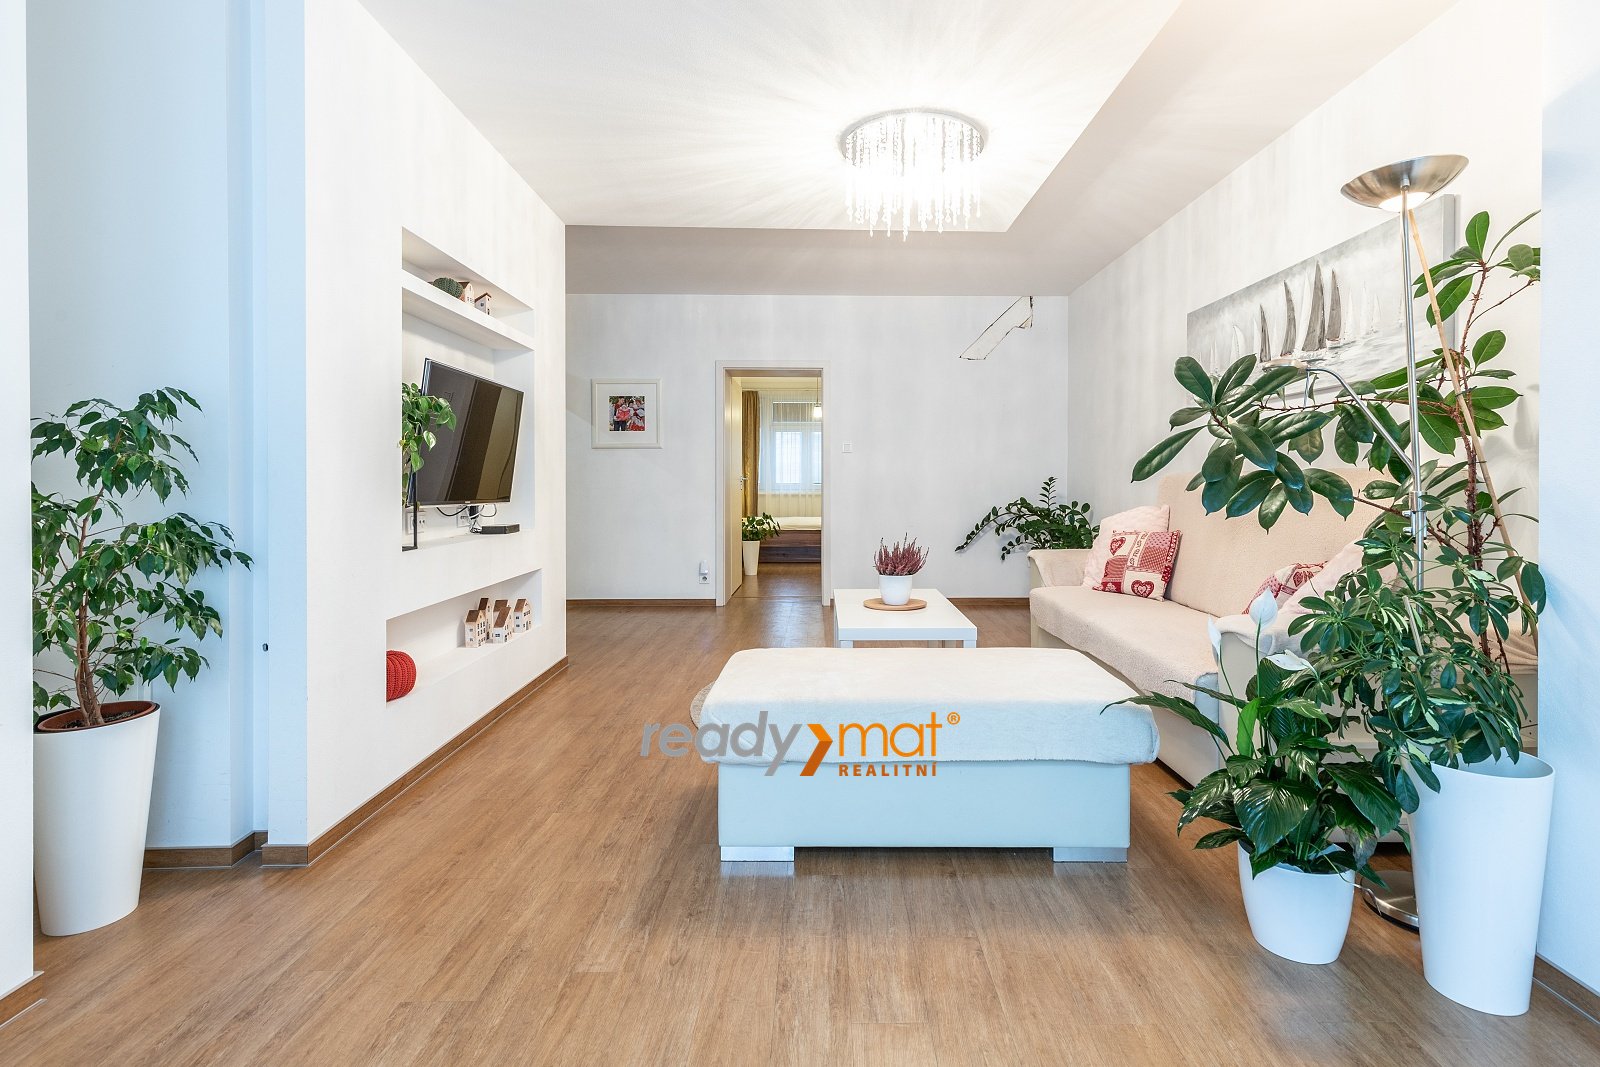 Prodej, Byty 3+1, 125 m² – Hodonín - ready-mat realitní